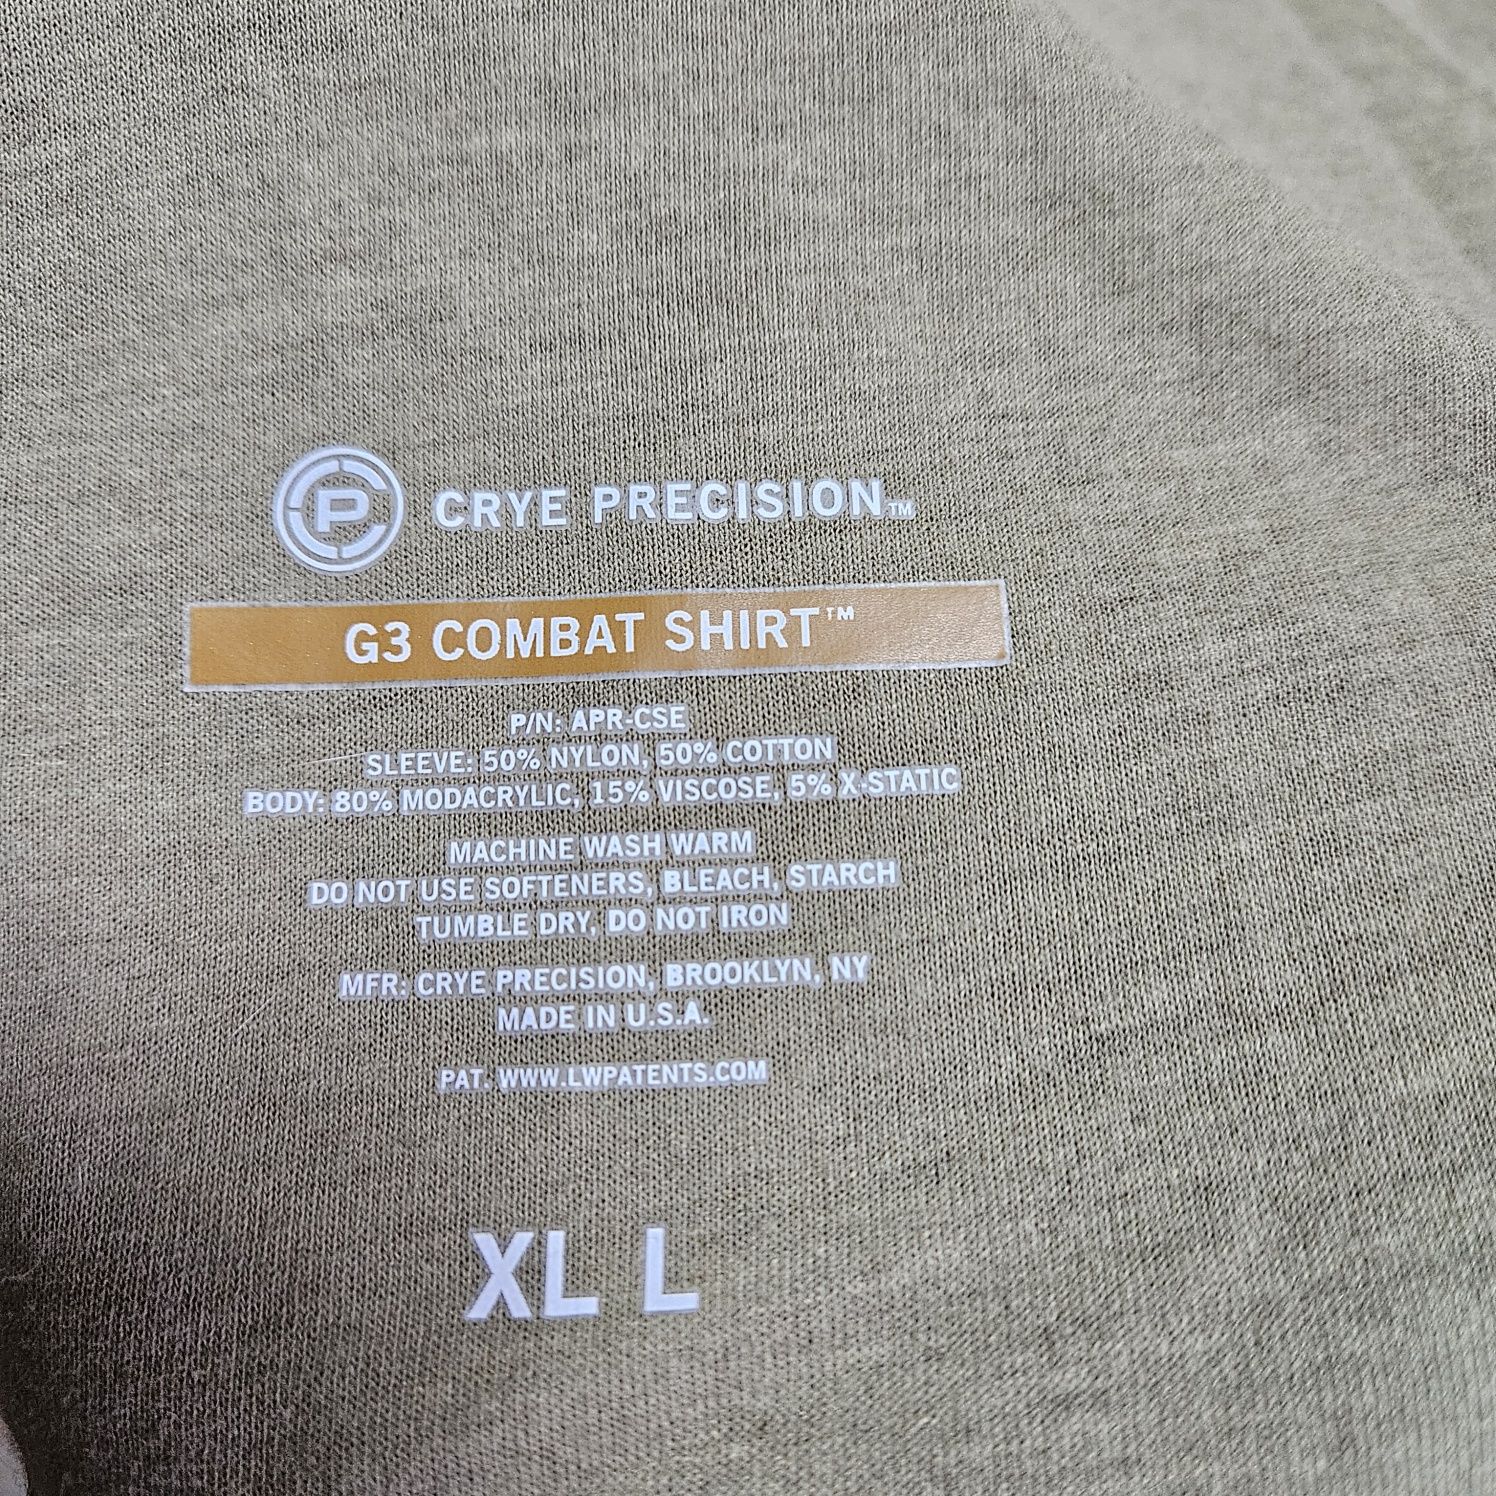 Розмір XL. Оригінальна сорочка CRYE PRECISION G3 COMBAT SHIRT